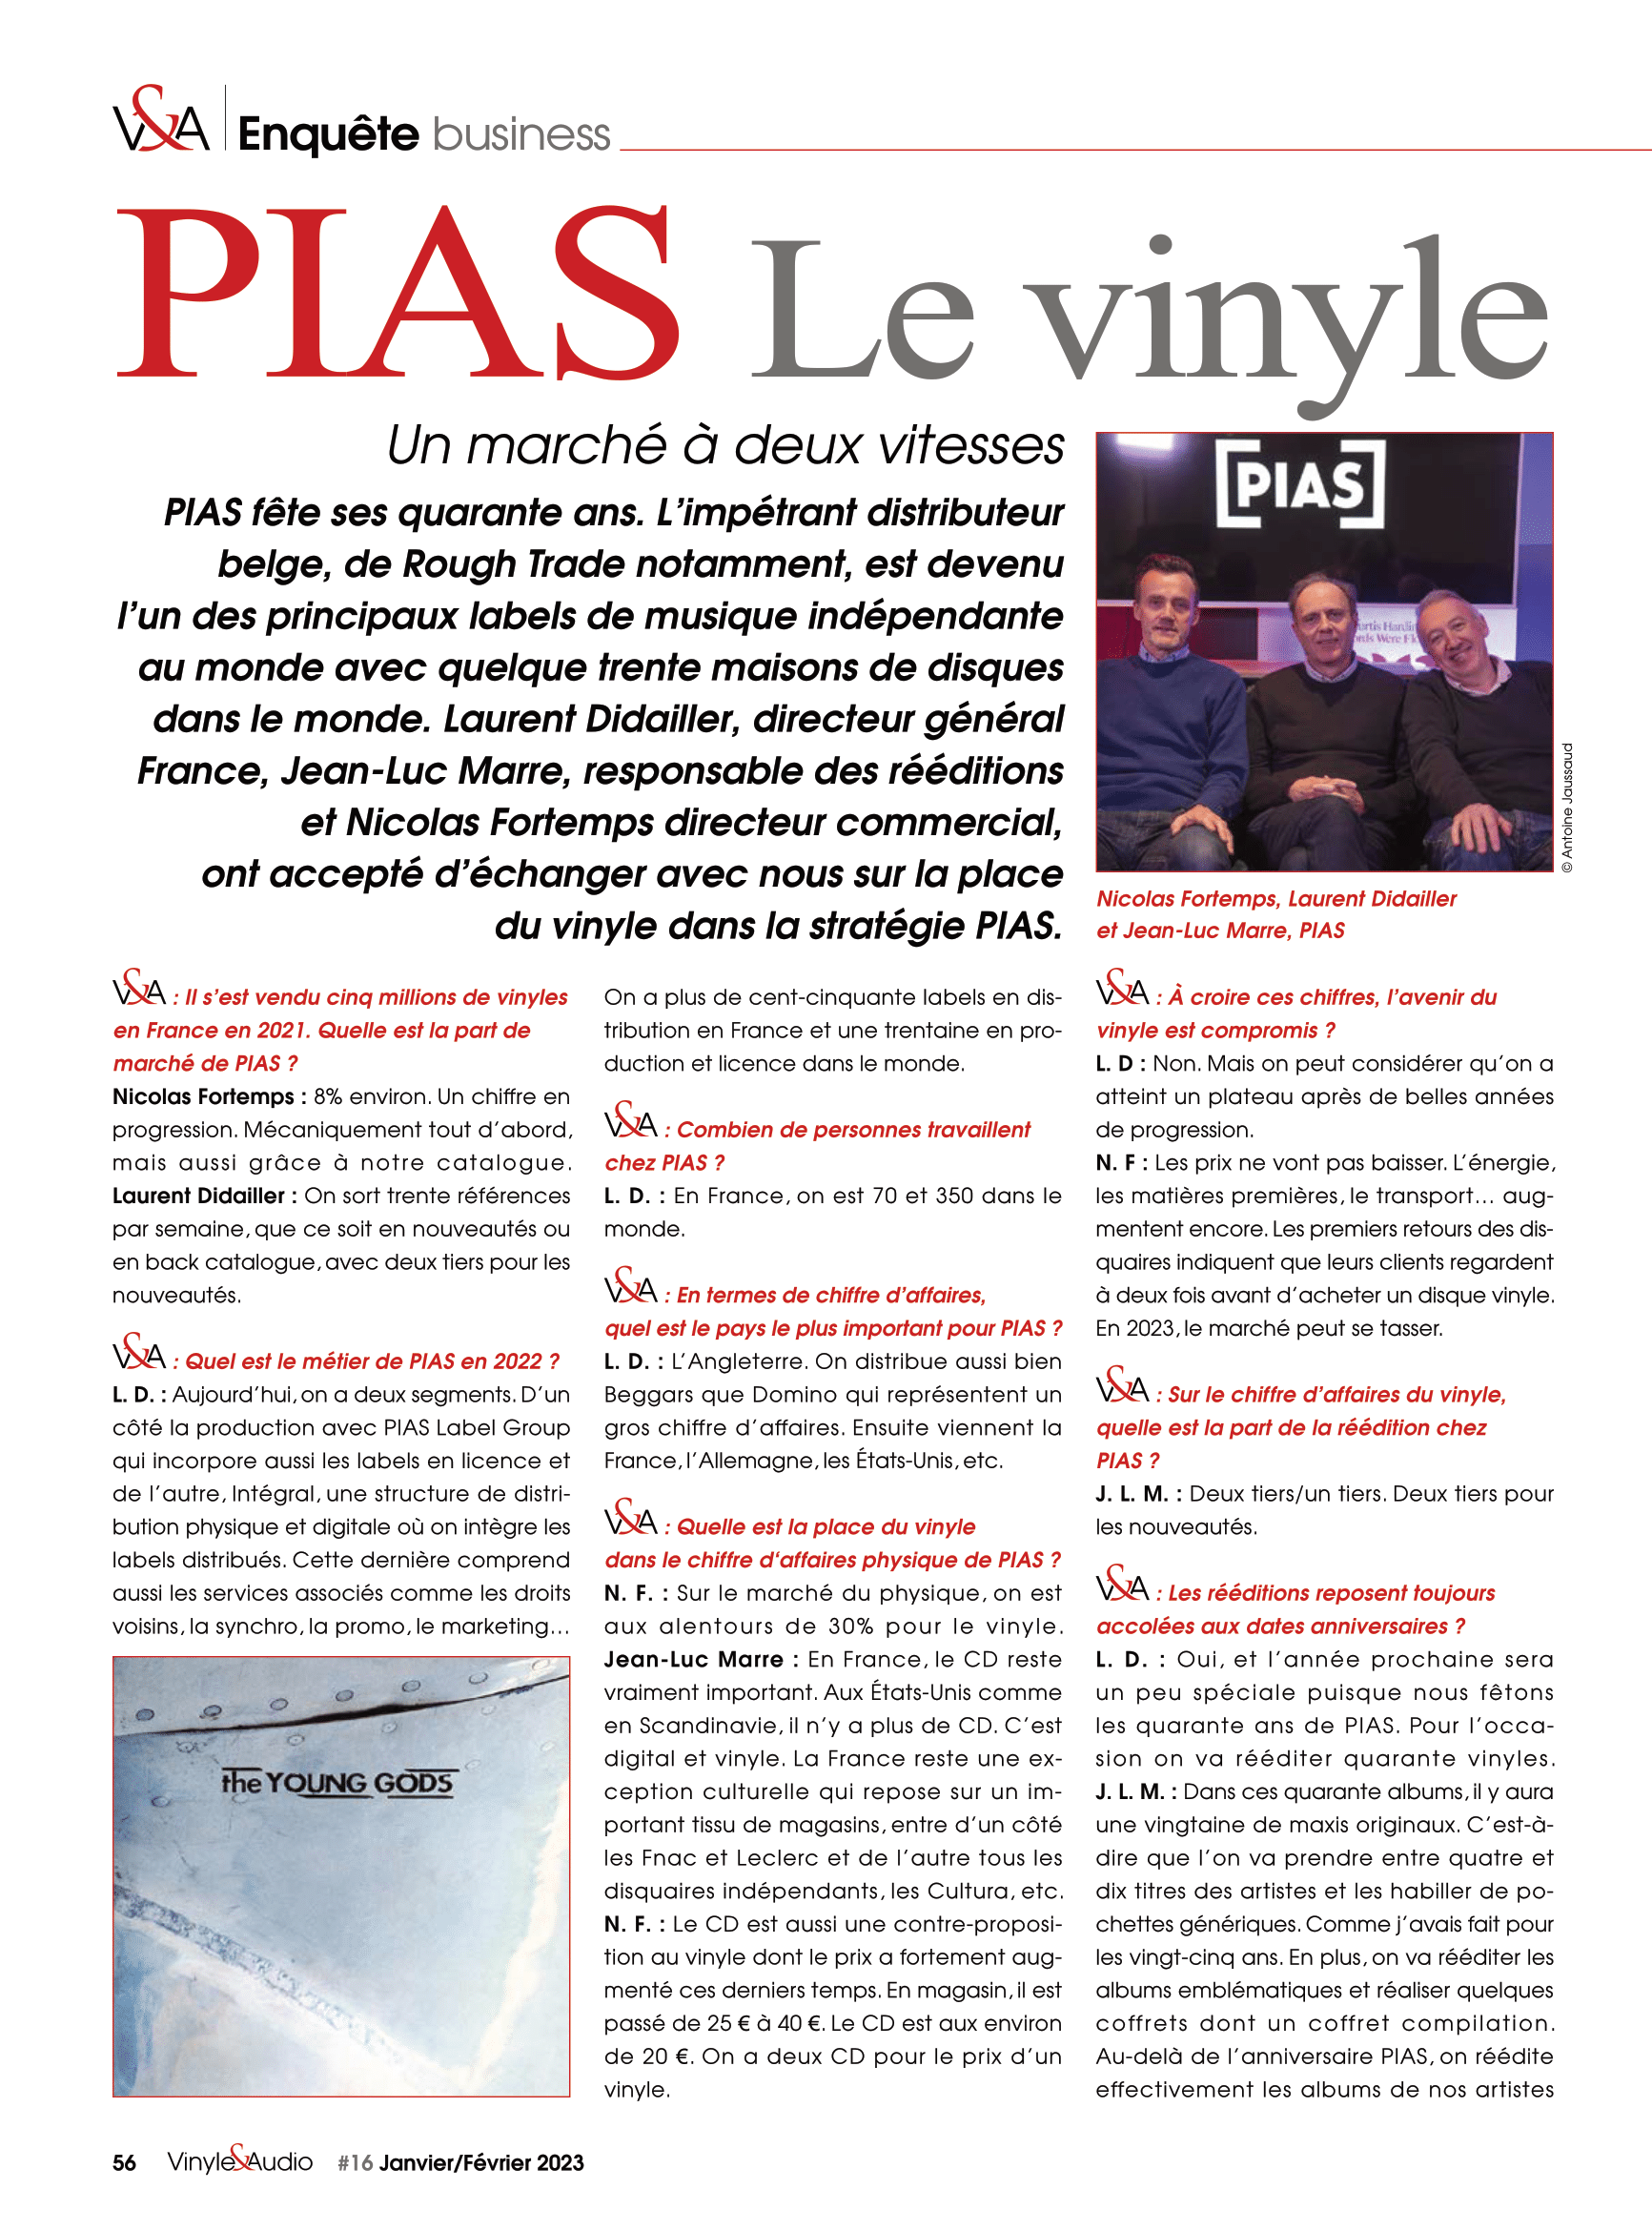 Vinyle & Audio n°16 : le vinyle selon PIAS